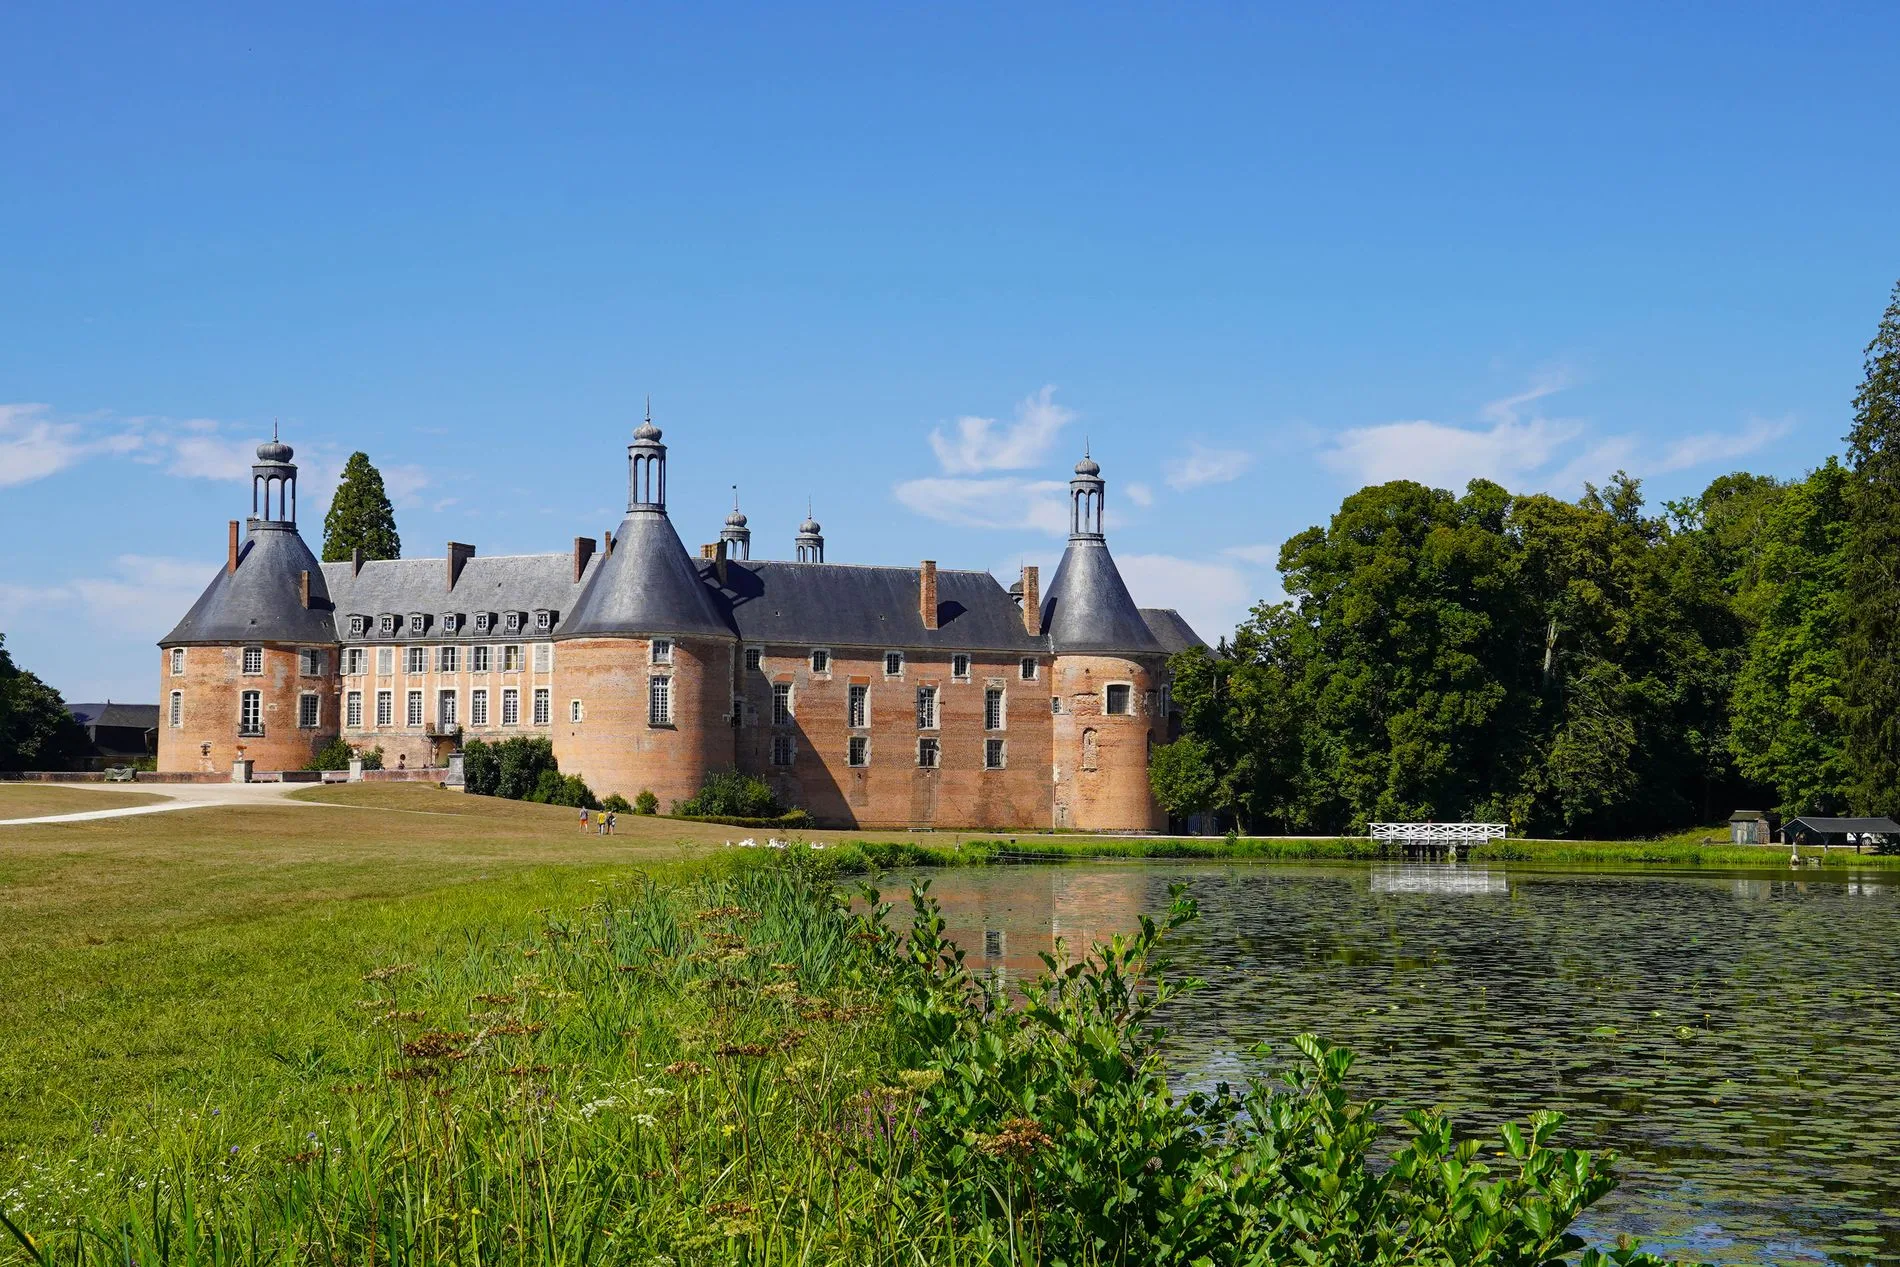 Château de Saint-Fargeau with its park and pond